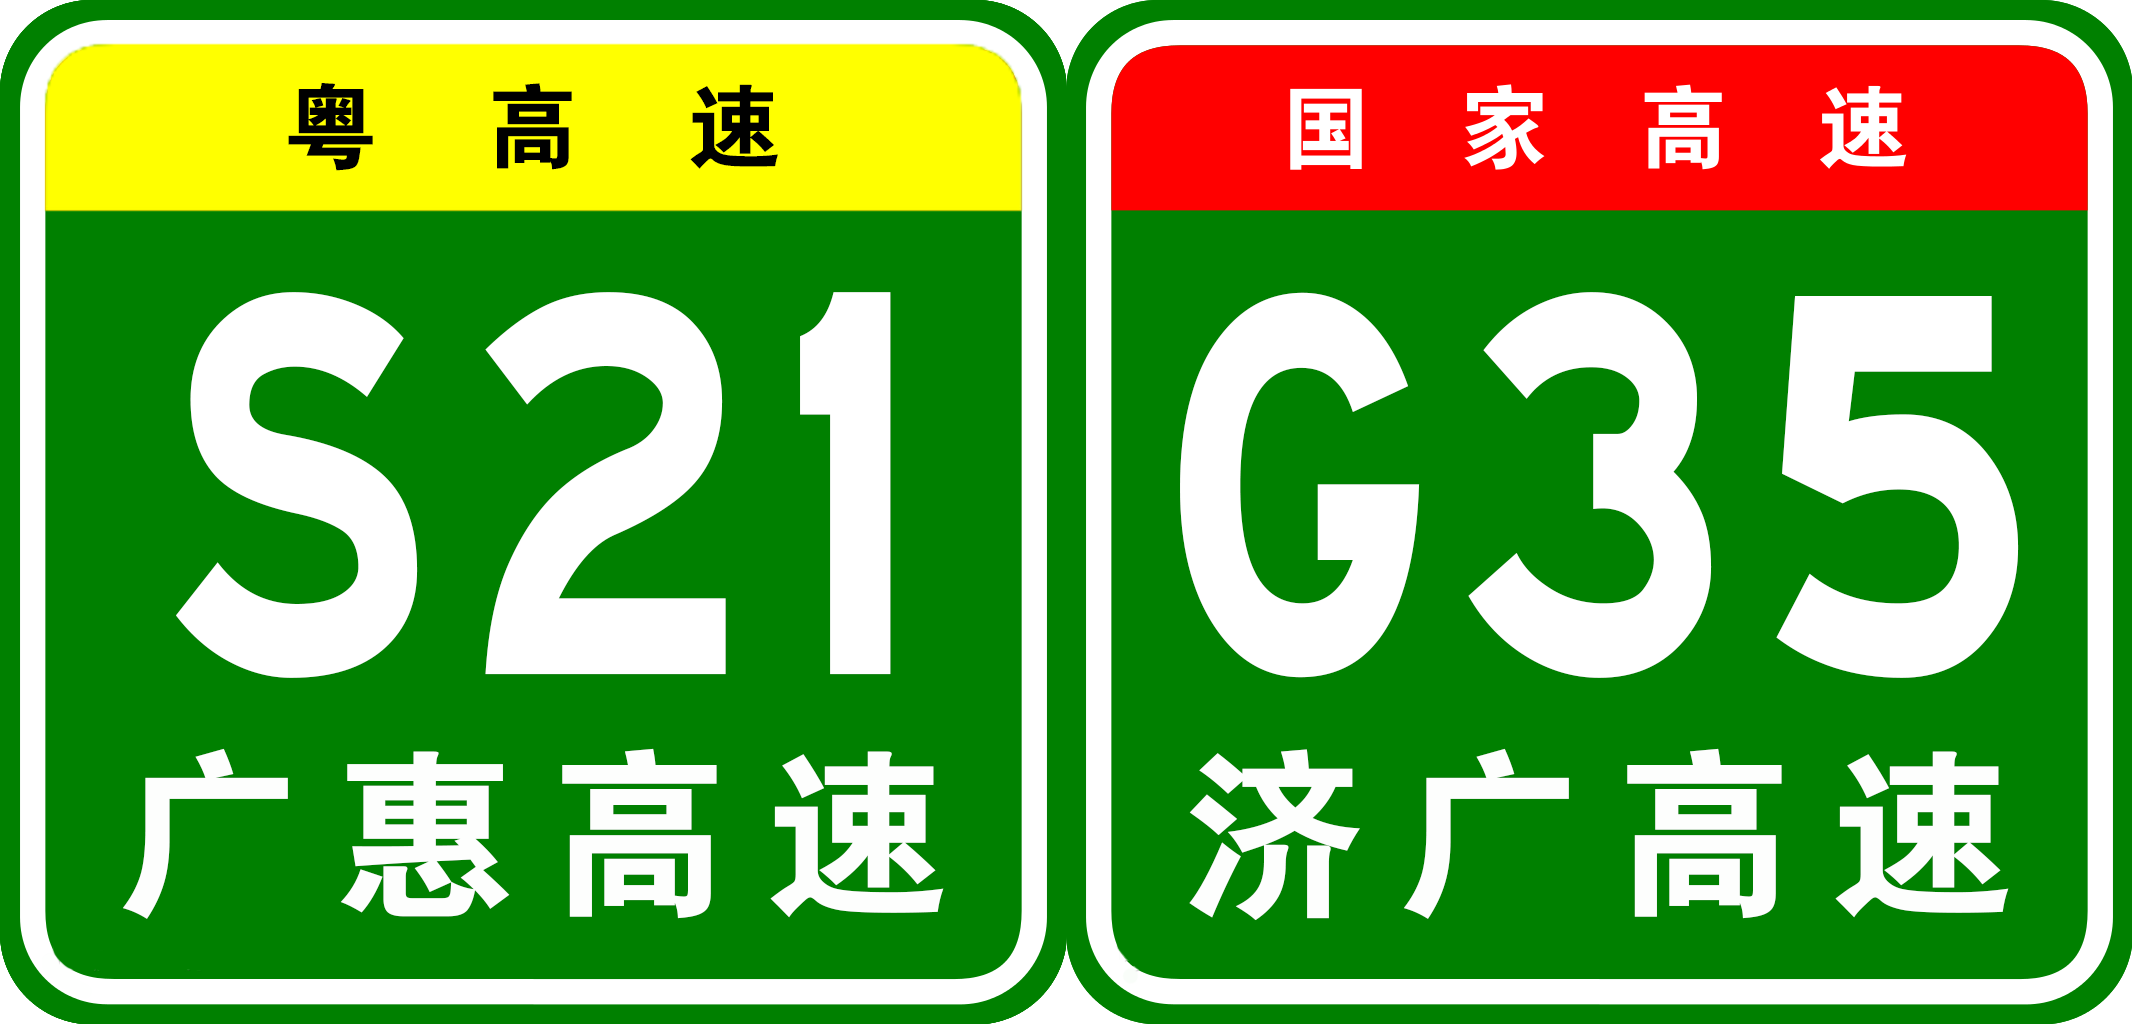 廣惠高速公路編號